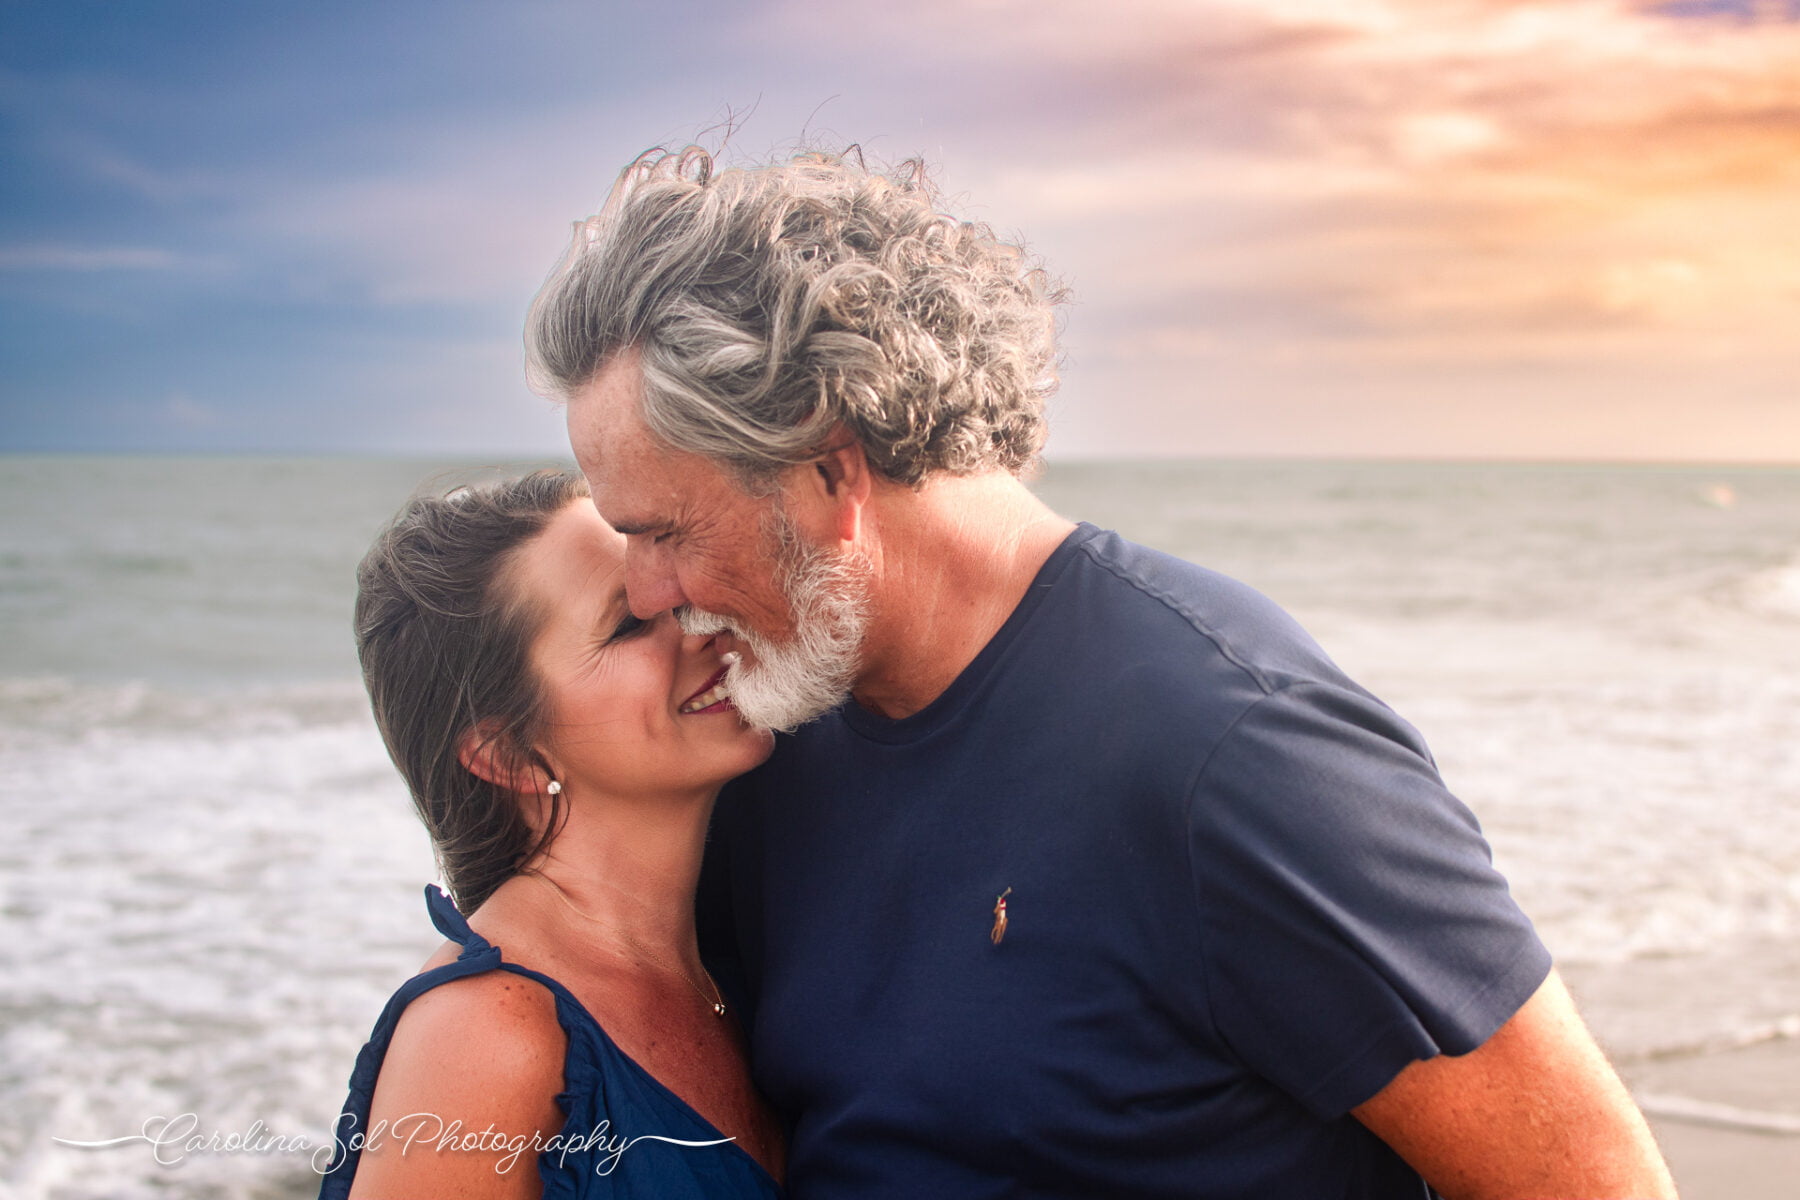 Emotive couples romantic portrait photography Holden Beach, NC.